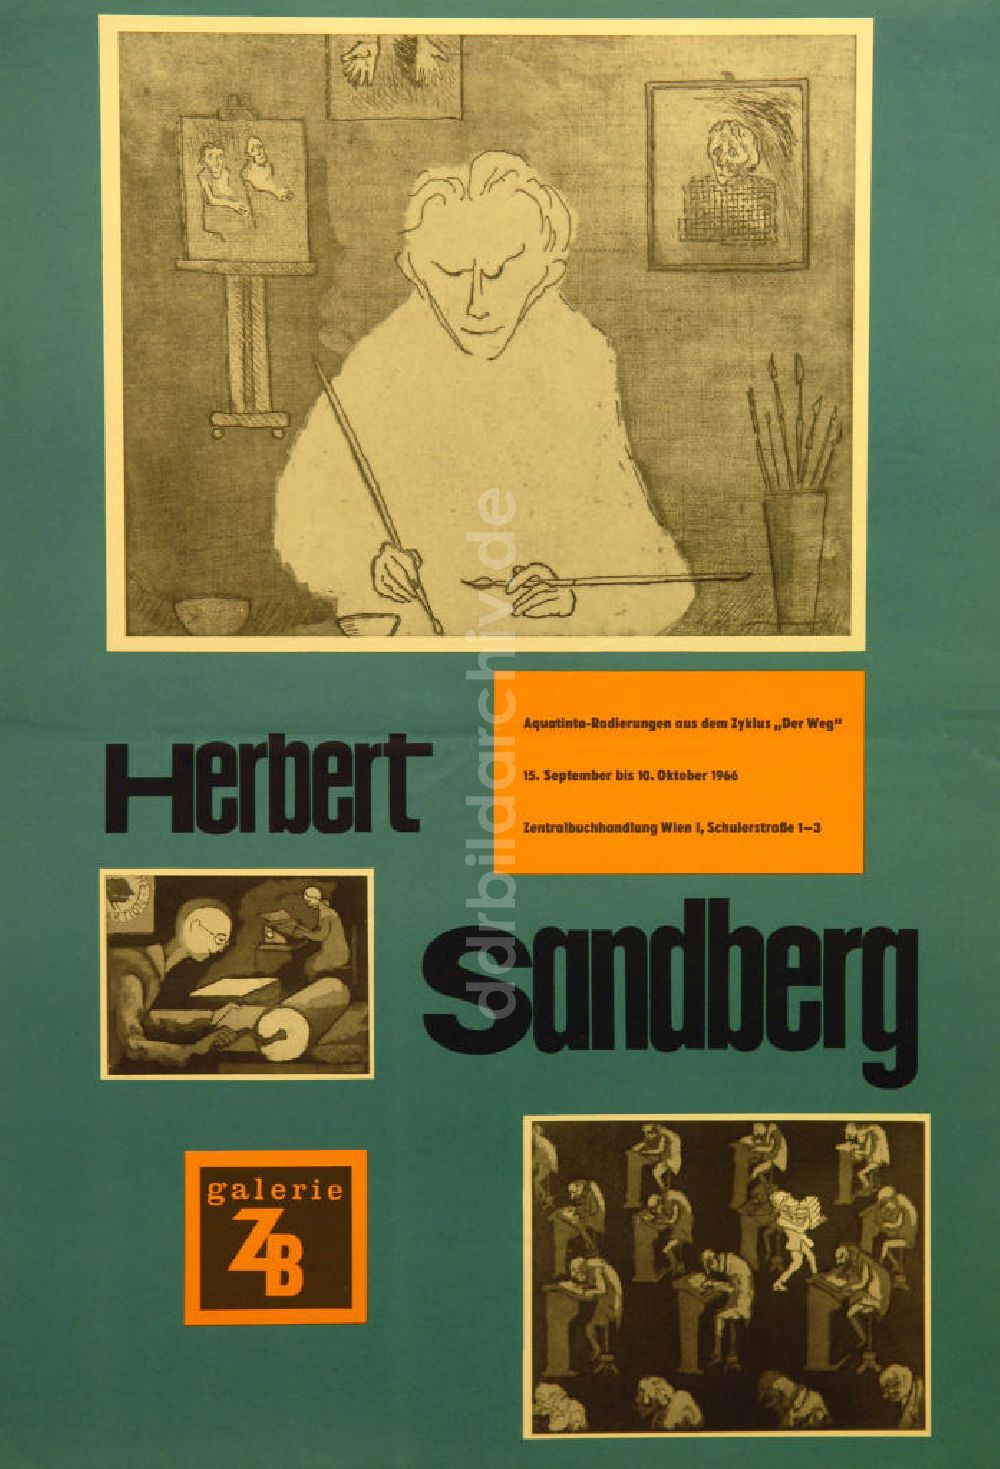 Berlin: Plakat von der Ausstellung Der Weg über Herbert Sandberg aus dem Jahr 1966